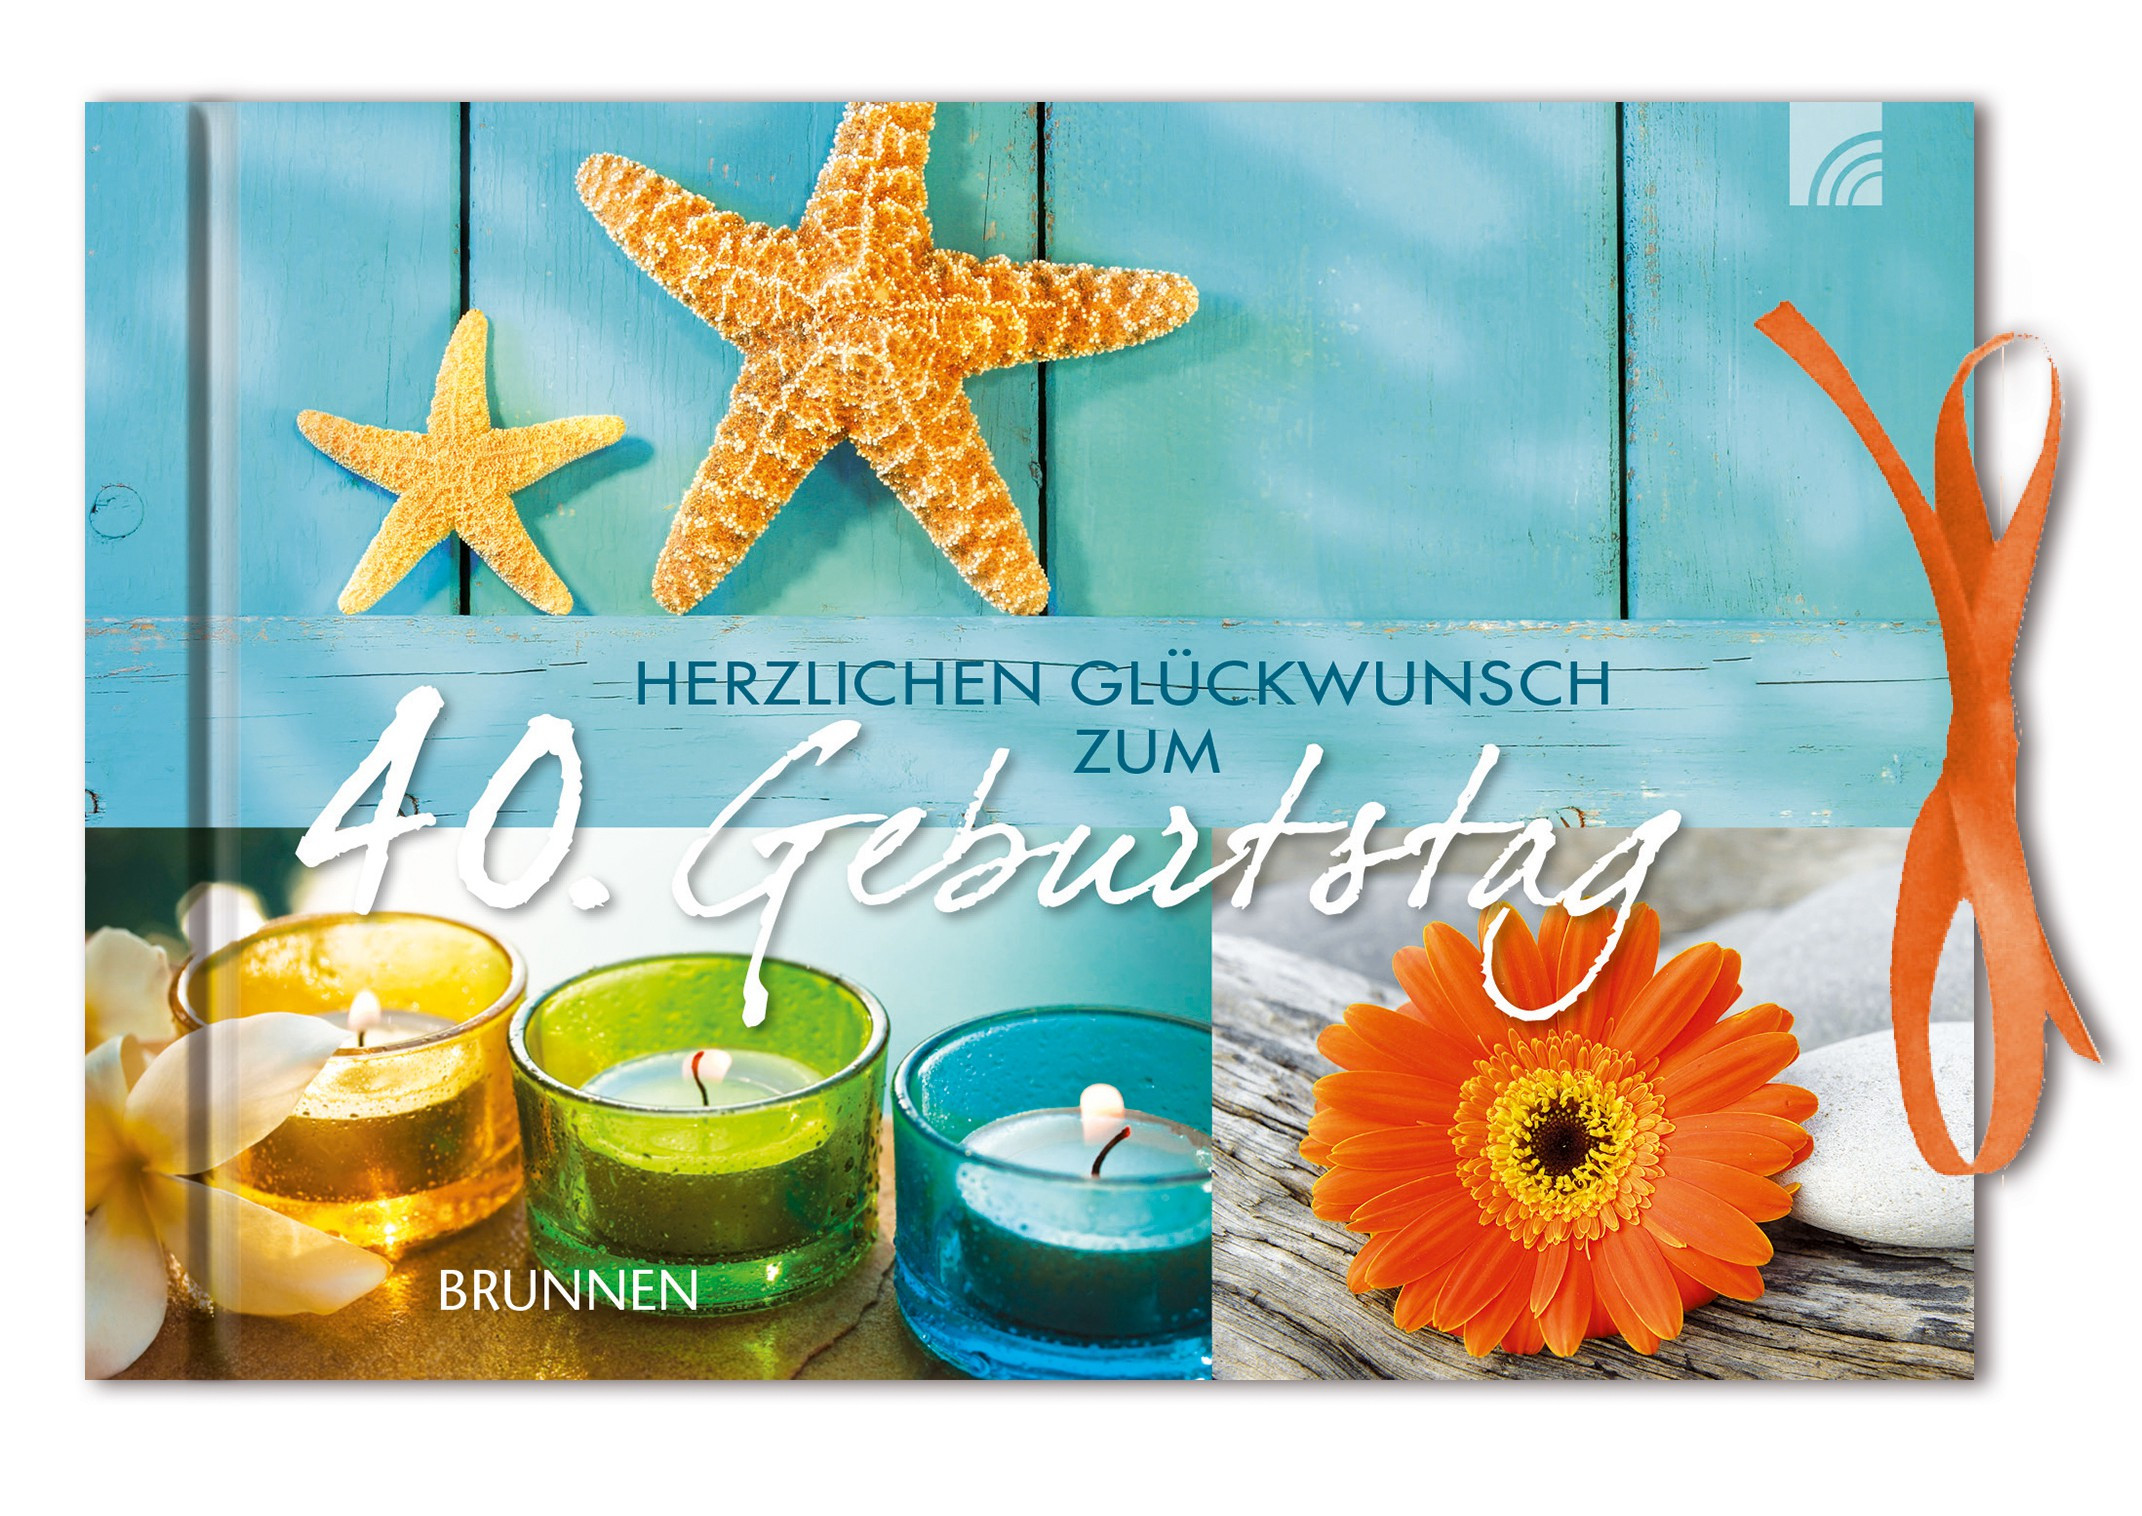 Geburtstagswünsche Zum 40. Geburtstag
 Search Results for “60 Geburtstag Gl Ckwunsch” – Calendar 2015